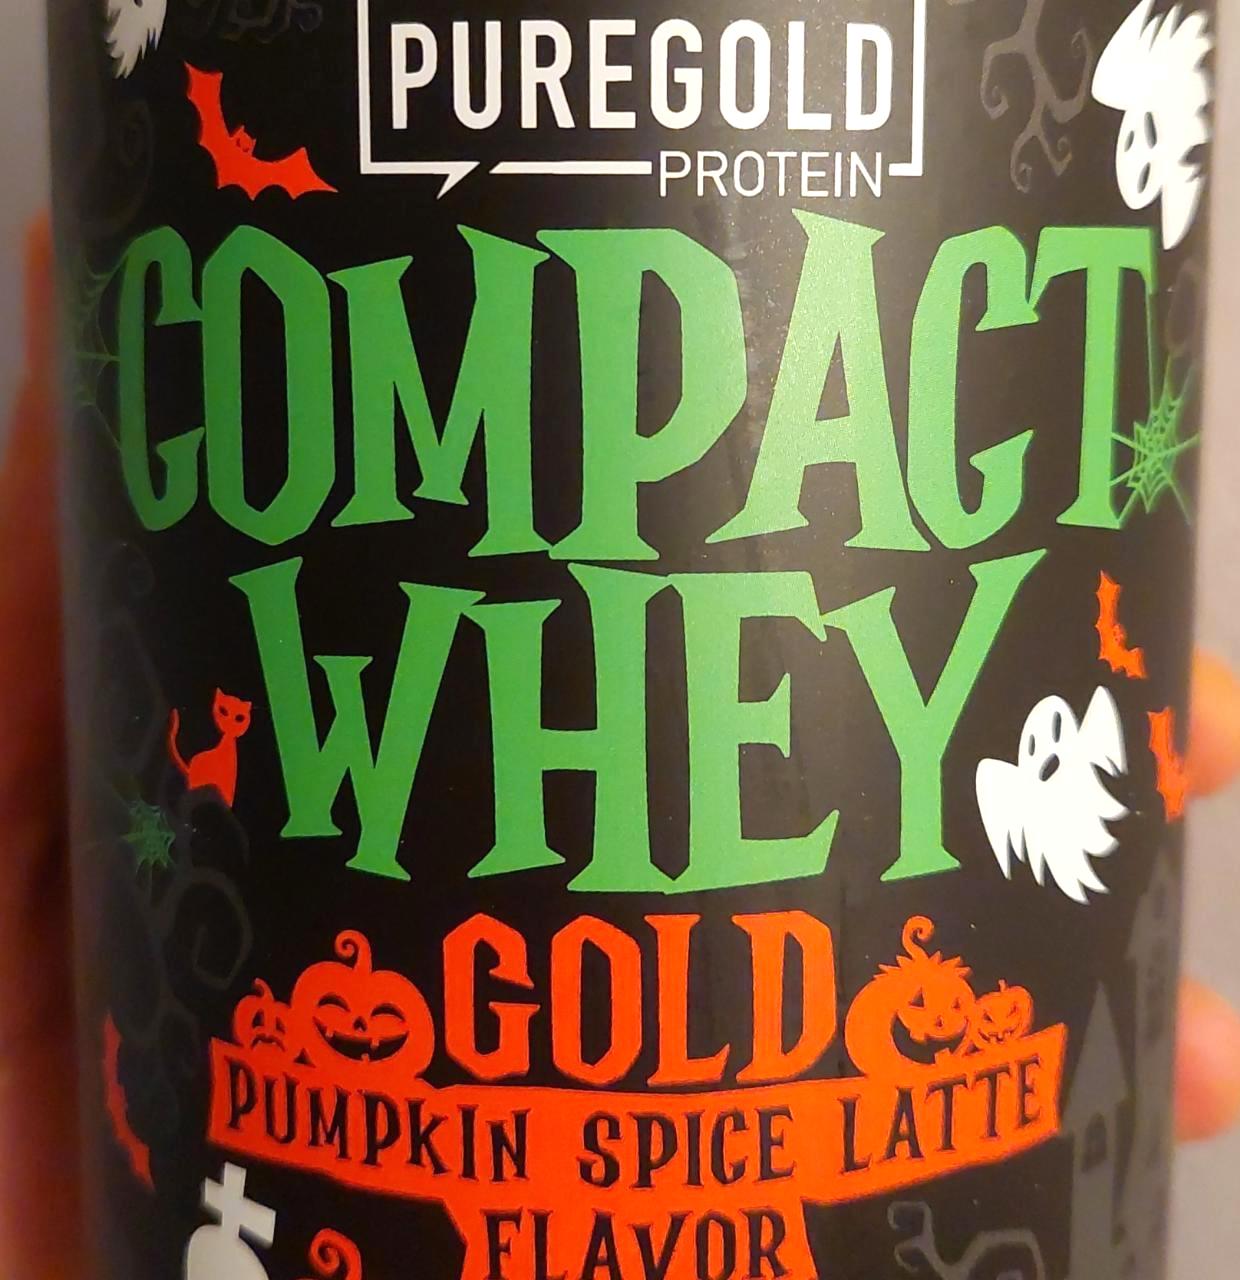 Képek - Compact Whey Gold Pumpkin Spice Latte Flavor Puregold